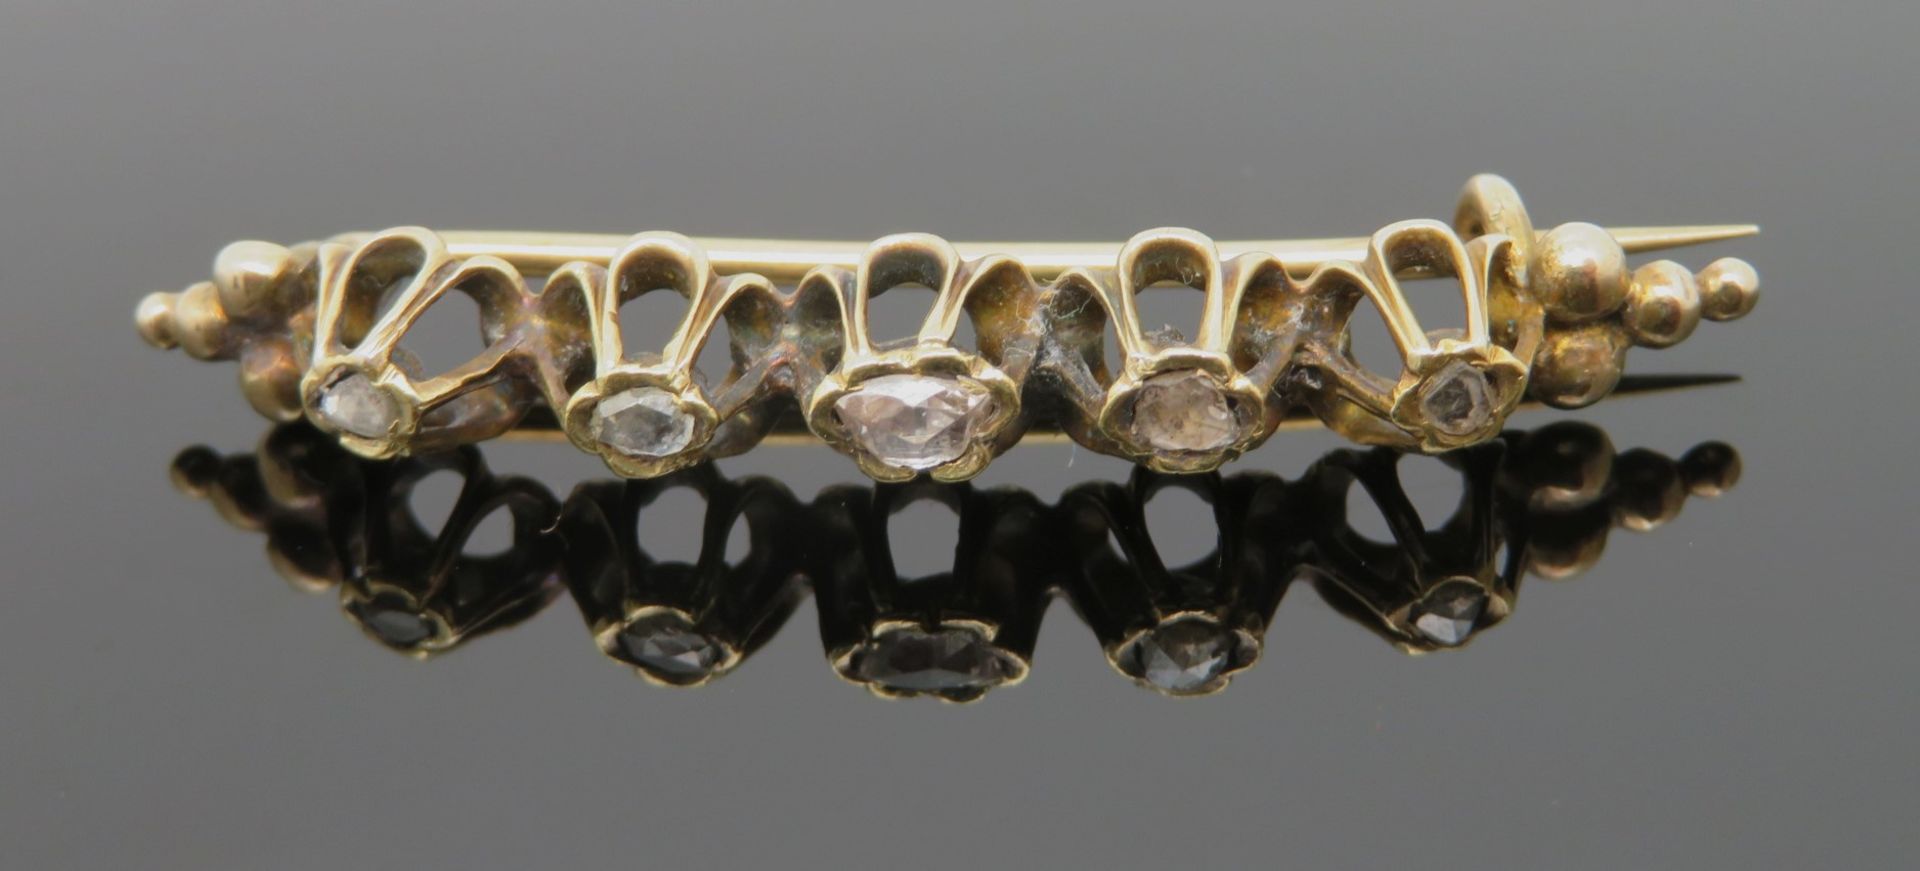 Antike Stabbrosche, um 1900, 5 Diamantrosen, Gelbgold 585/000, geprüft, 3,8 g, l 4,4 cm, b 0,7 cm.